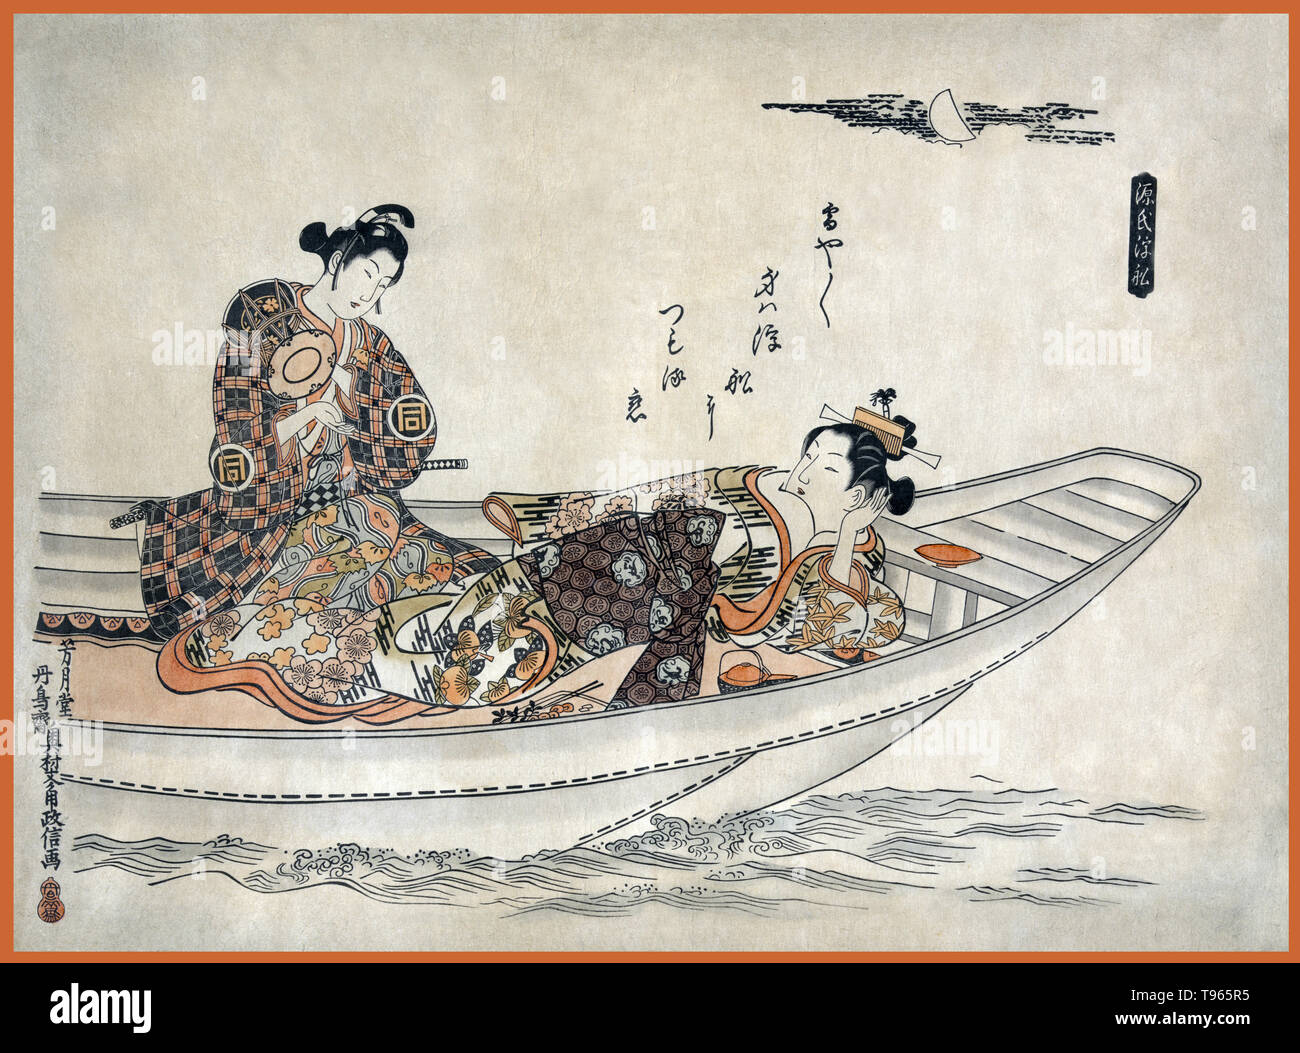 Deux amoureux dans un bateau. Montre un homme et une femme dans un bateau ; l'homme est maintenant un petit tambour et semble être la femme sérénade sous la lune. L'Ukiyo-e (photo du monde flottant) est un genre d'art japonais qui a prospéré à partir du xviie au xixe siècles. L'Ukiyo-e a été au centre de formation de la perception de l'Occident de l'art japonais à la fin du xixe siècle. Banque D'Images